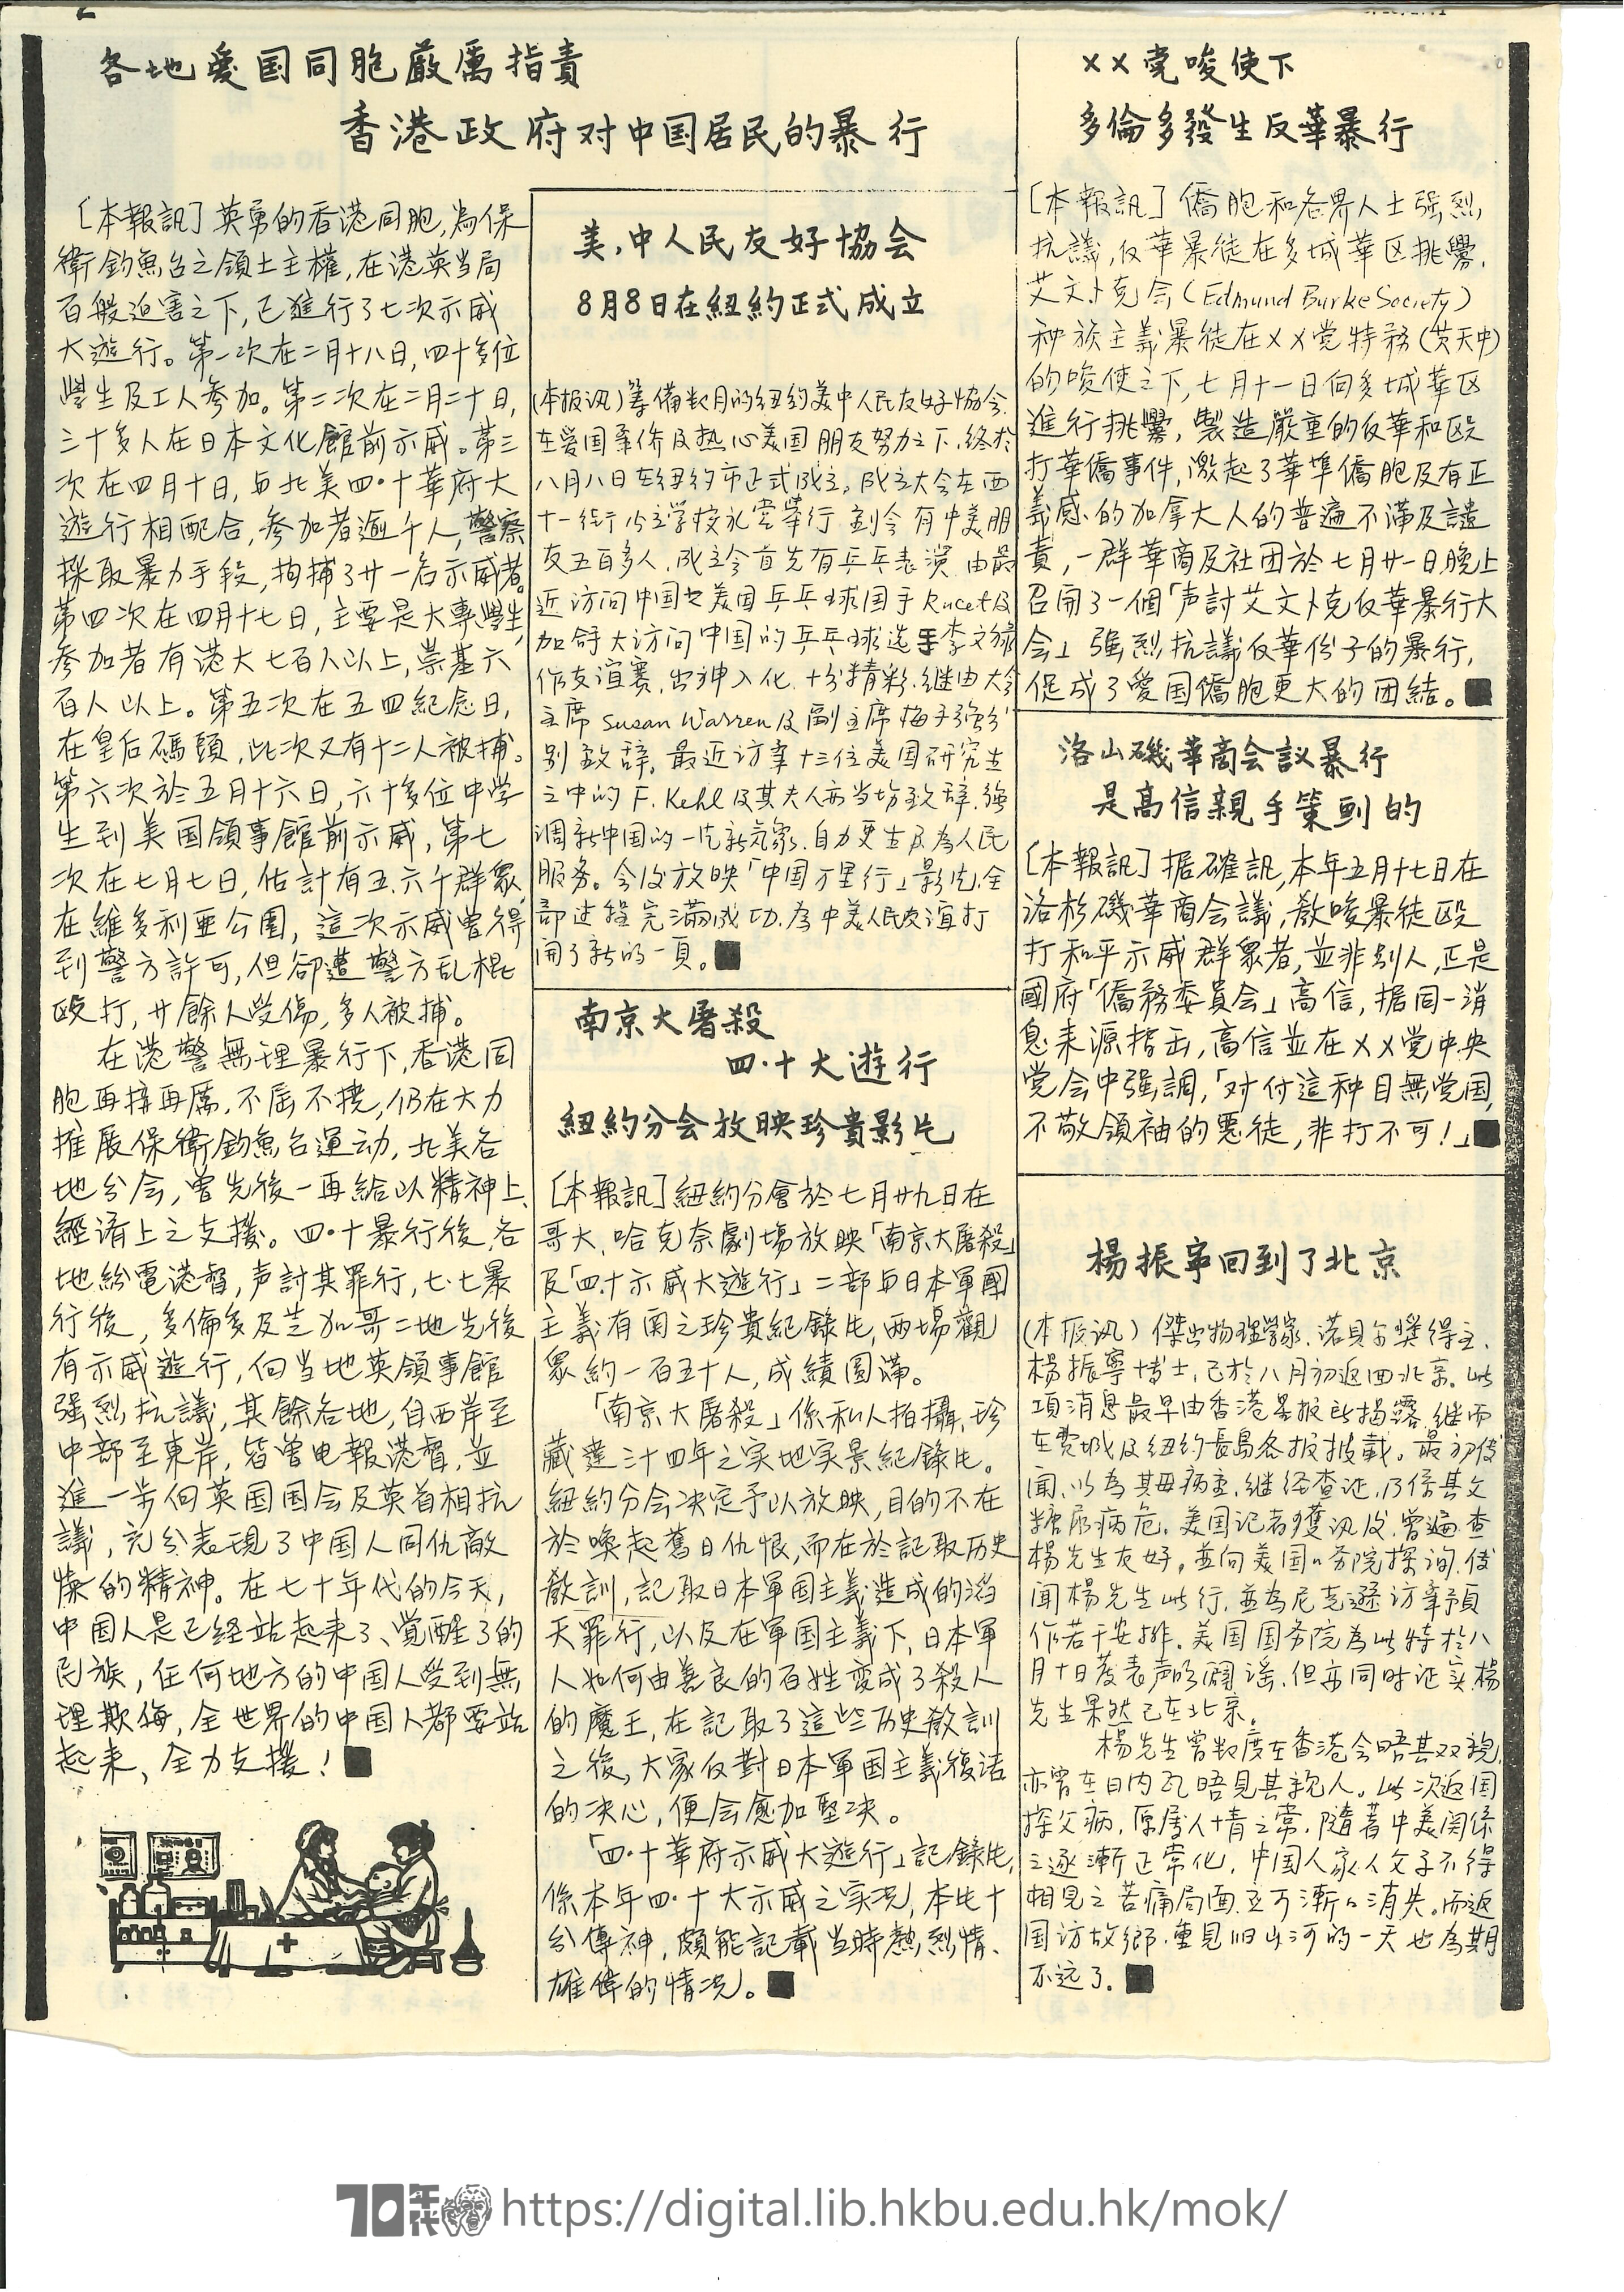   美、中人民友好協會8月8日在紐約正式成立  